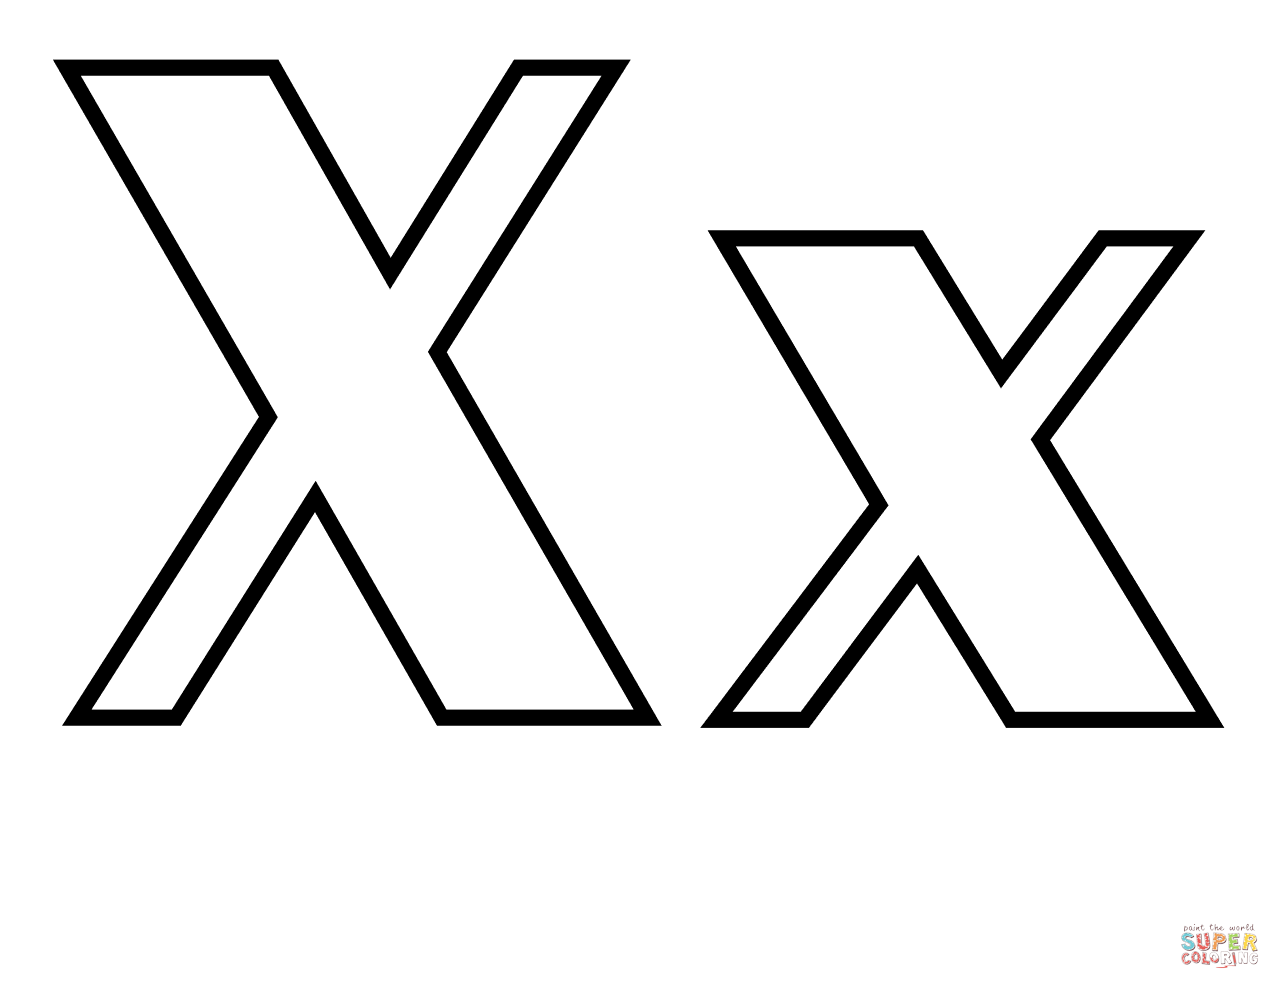 الحرف الكلاسيكي X من الحرف X